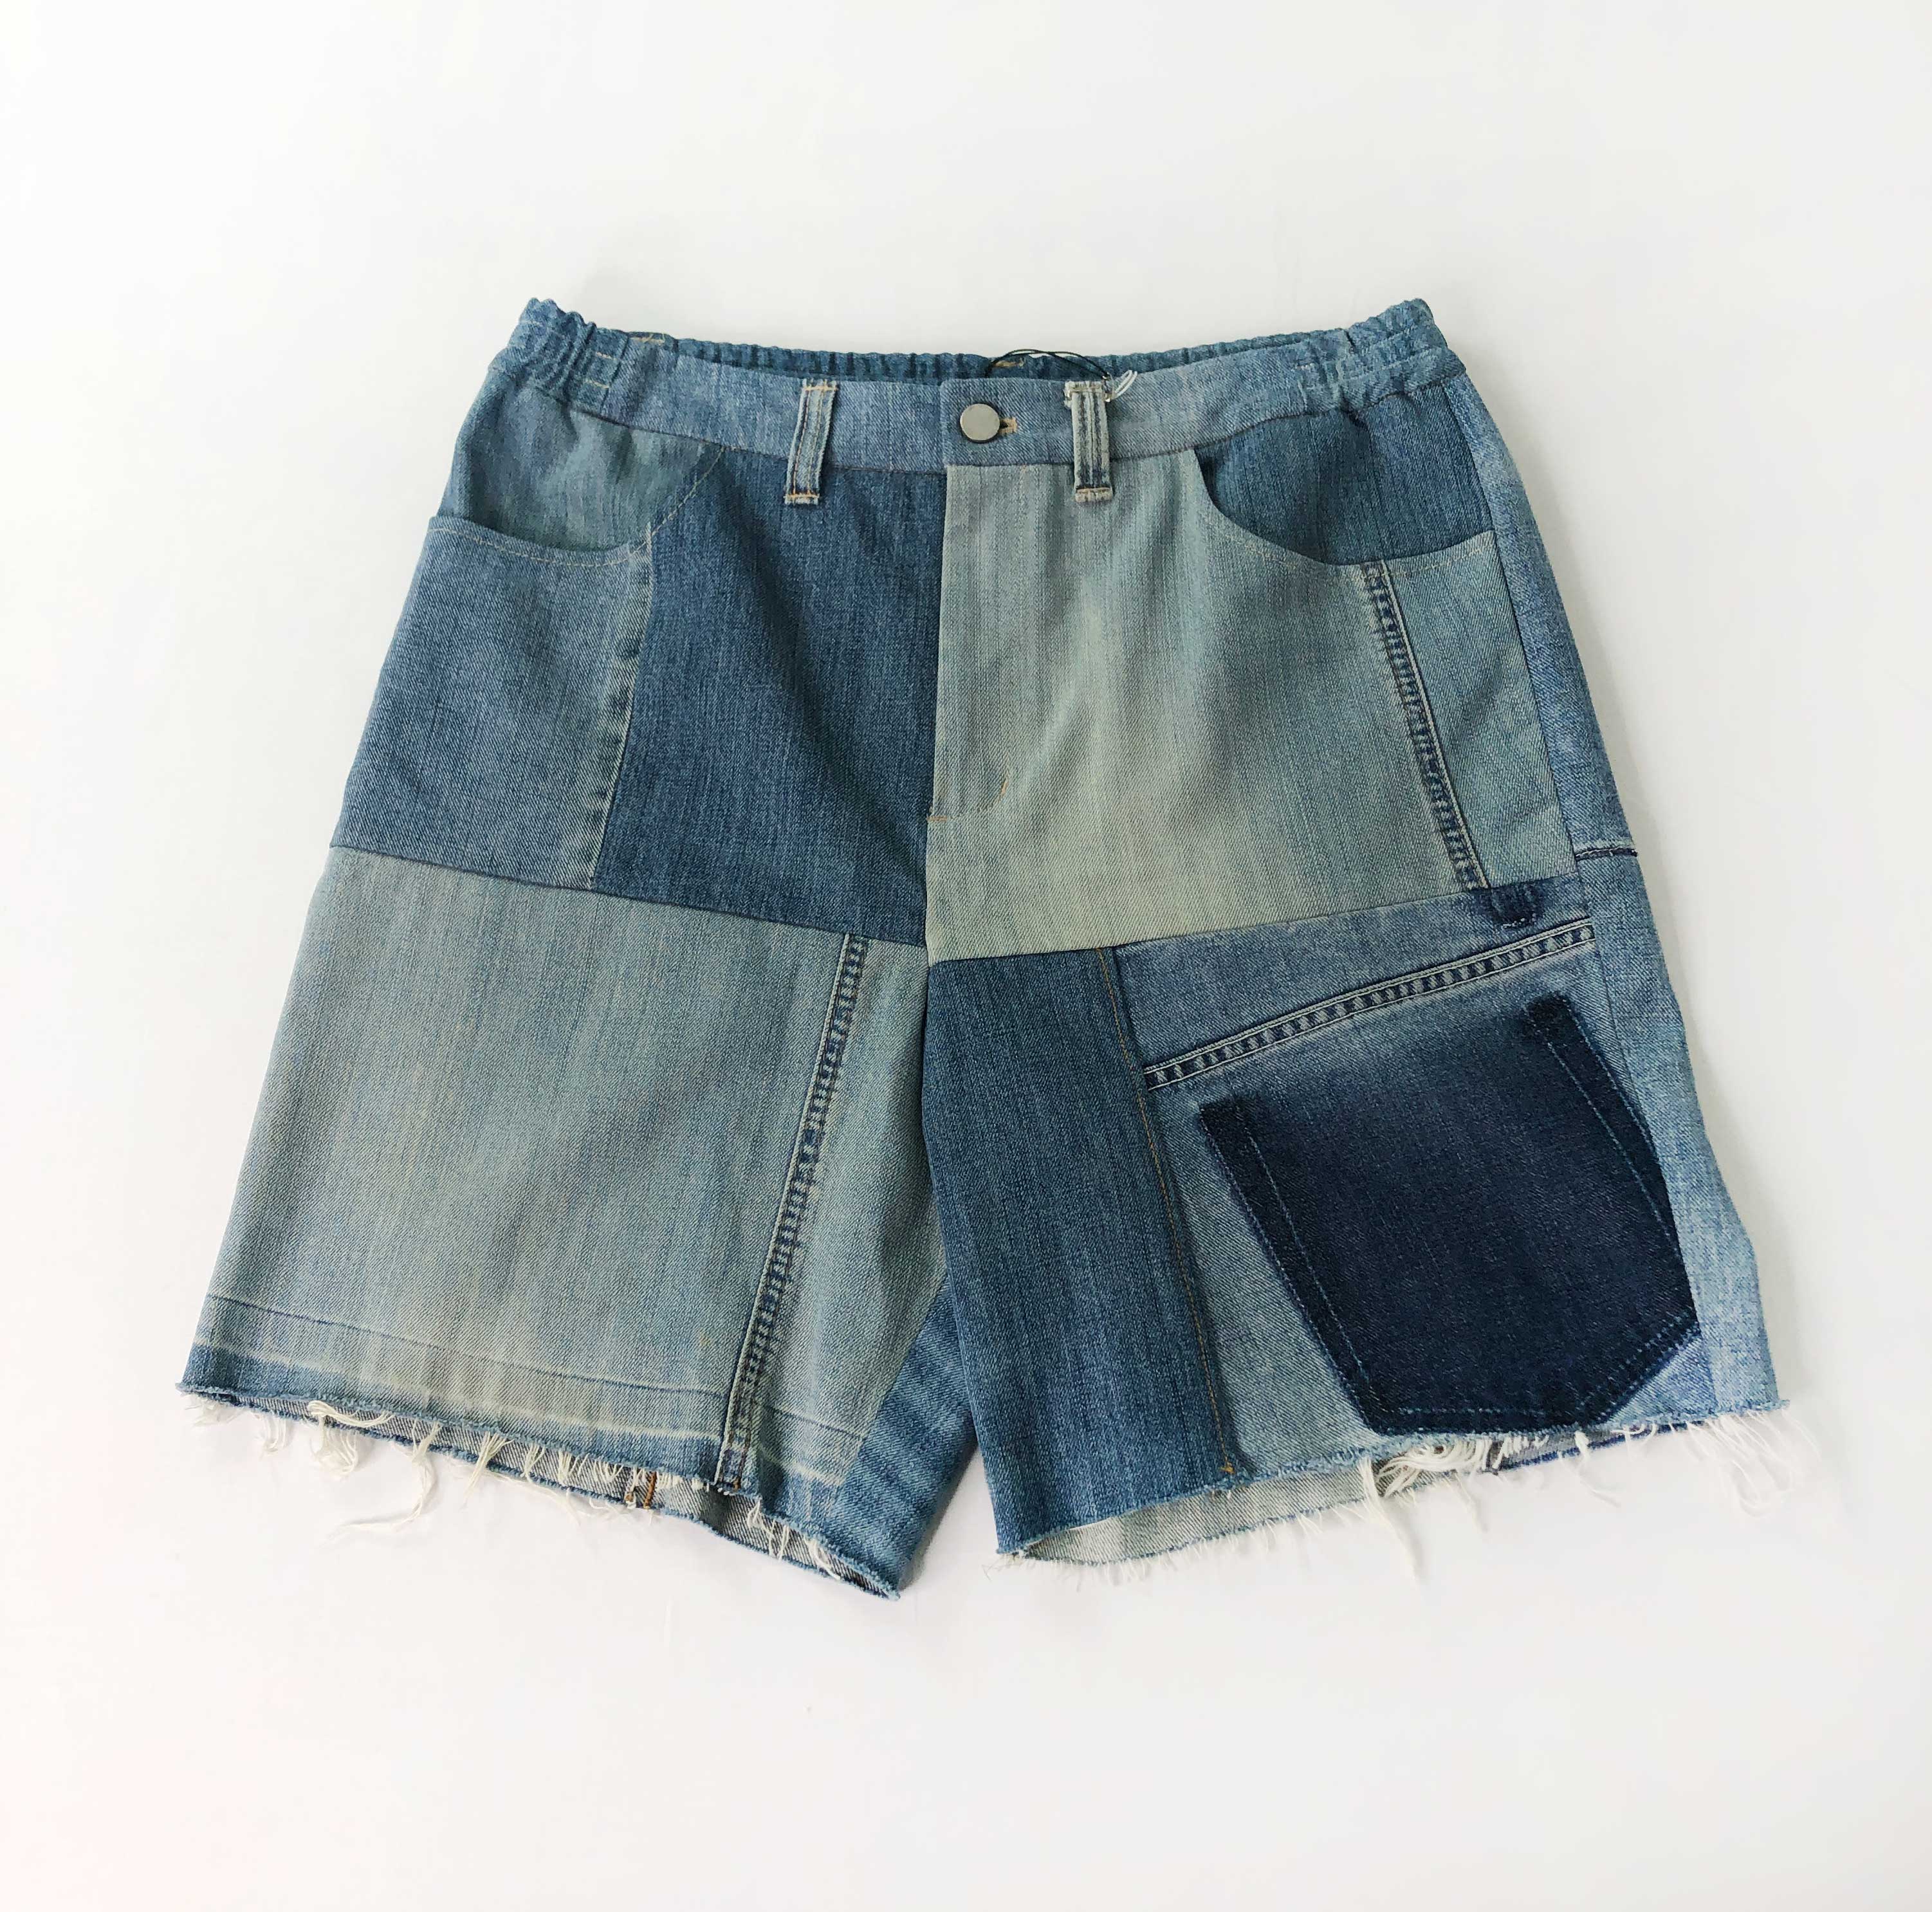 [T.B.O.S] Vintage Levis Short Pants - Size Free